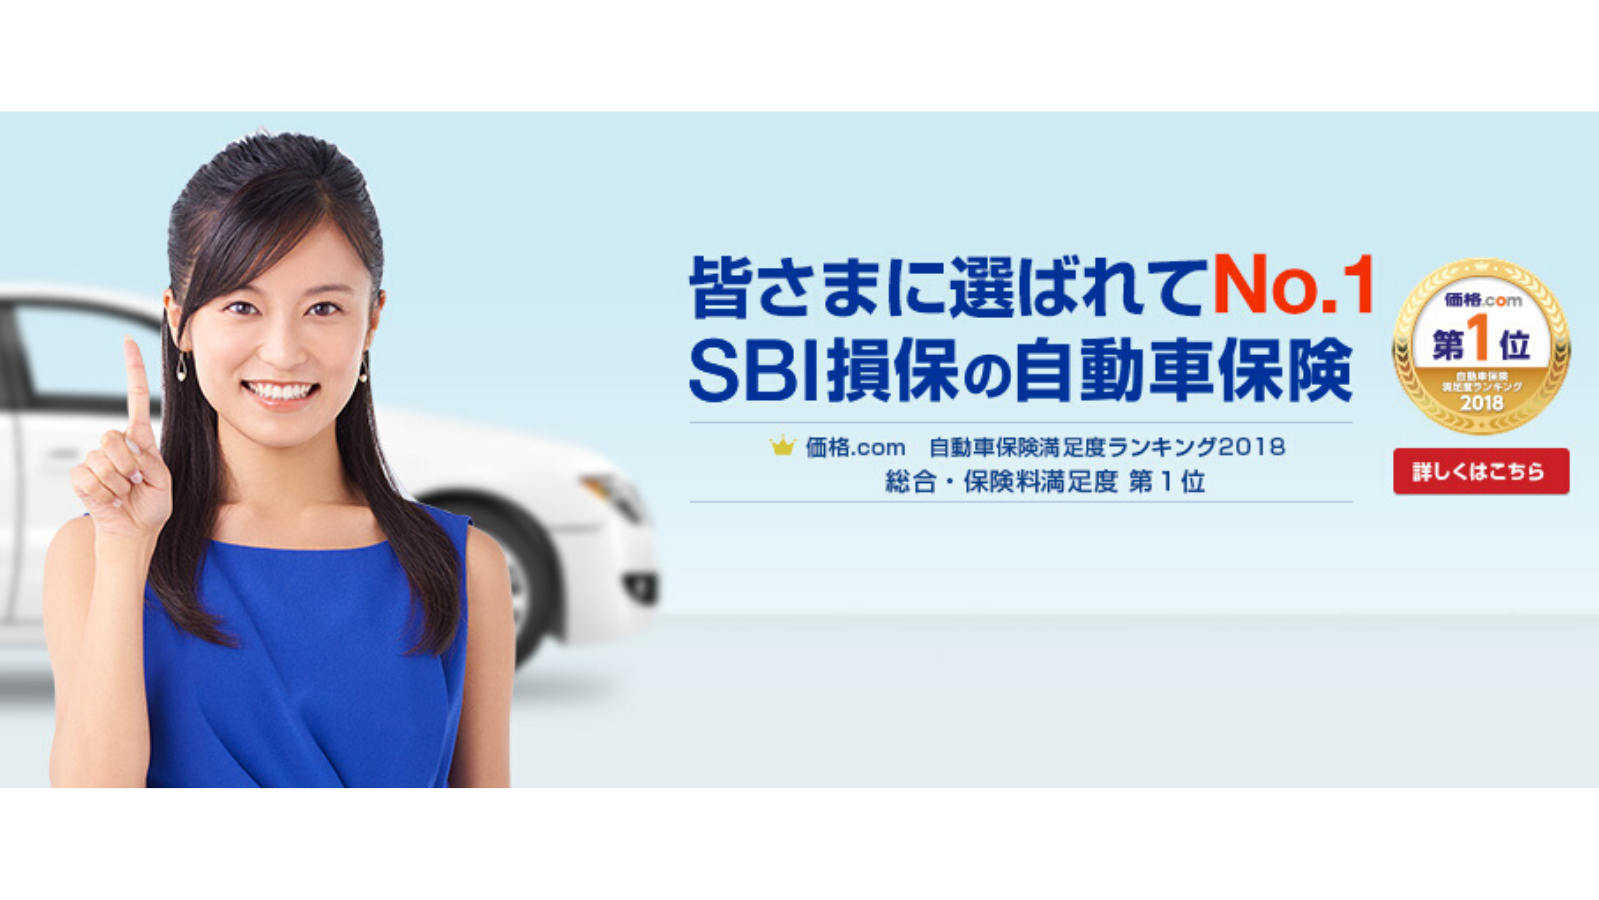 Sbi損保の自動車保険は安い 口コミ評判と保険料相場を紹介 自動車保険の窓口